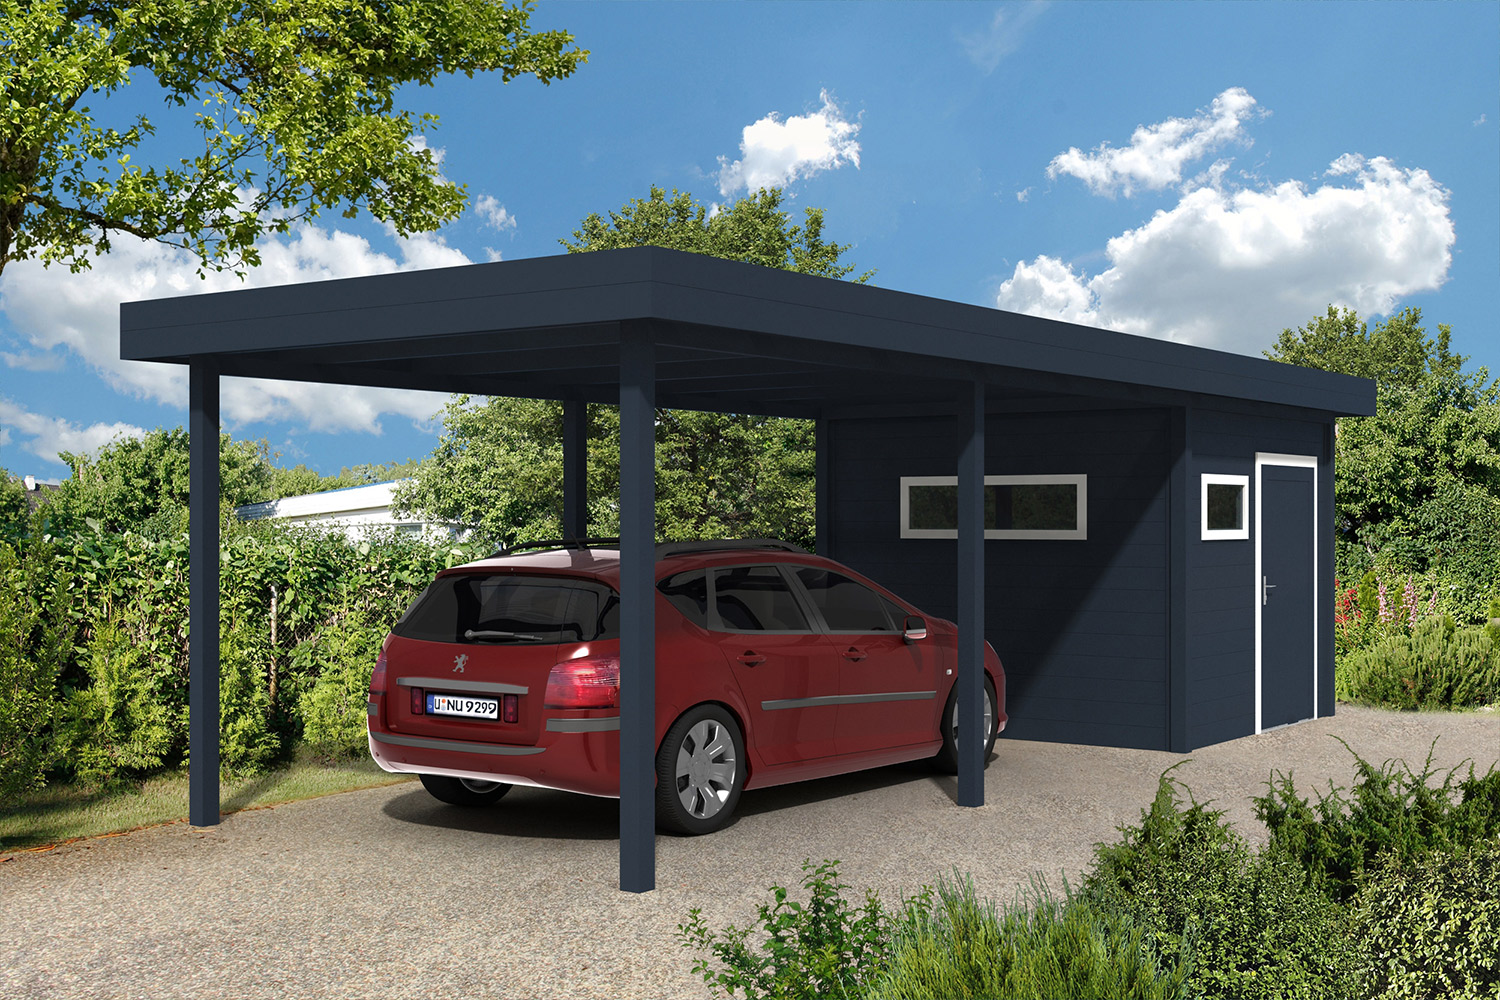 Легкий гараж для автомобиля: особенности строительства, как дешево построить из кирпича, как сделать постройку самому